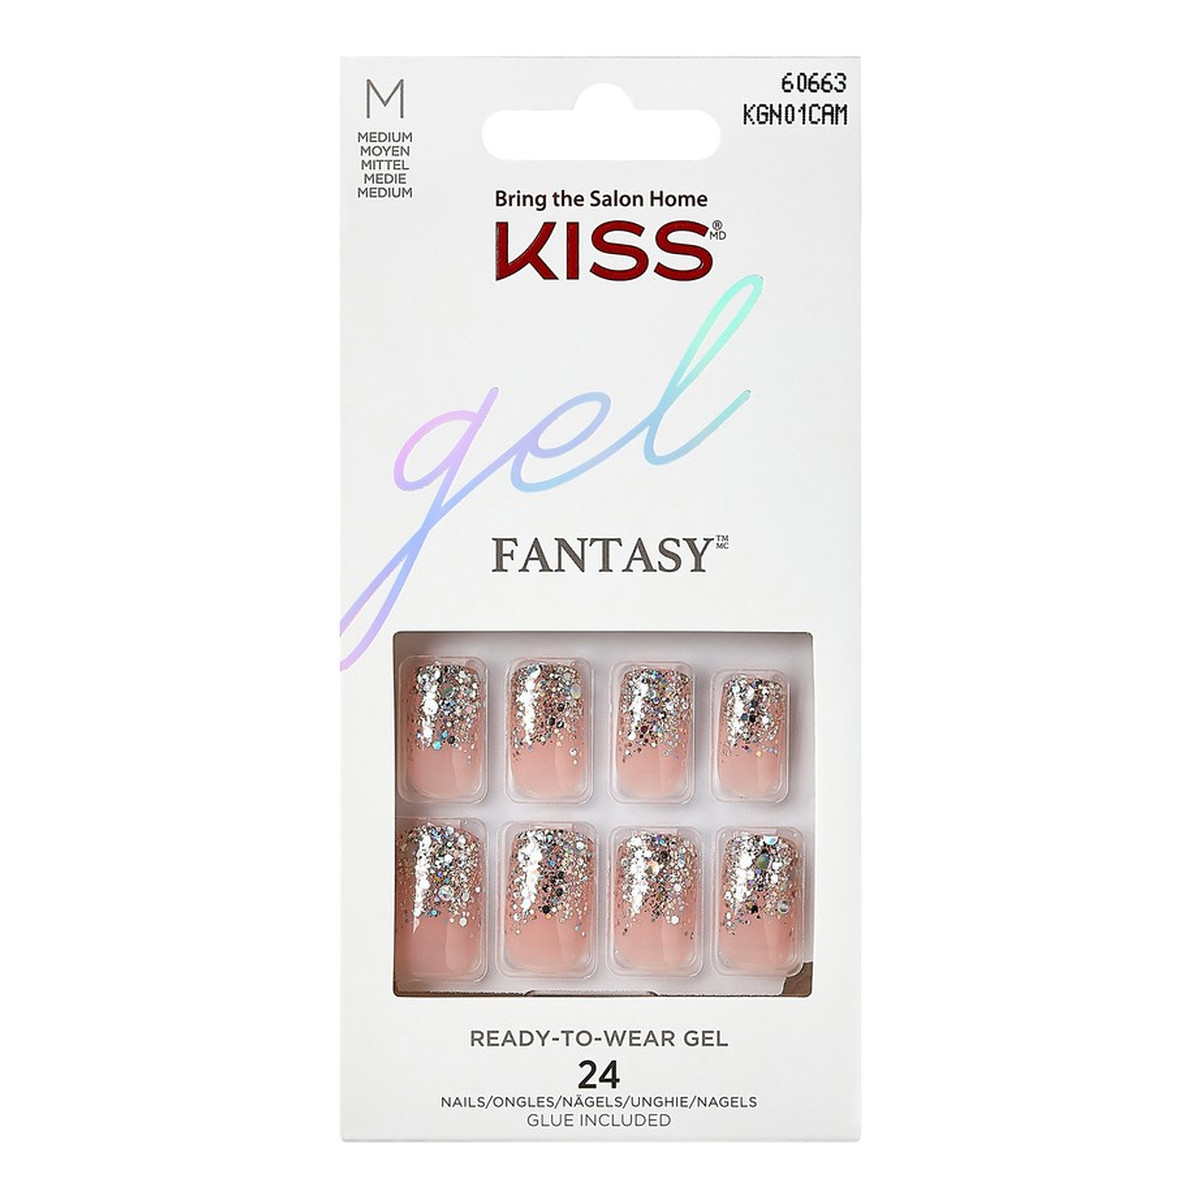 Kiss Gel Fantasy Sztuczne paznokcie Gel Fantasy - Fanciful (rozmiar M) 24szt.